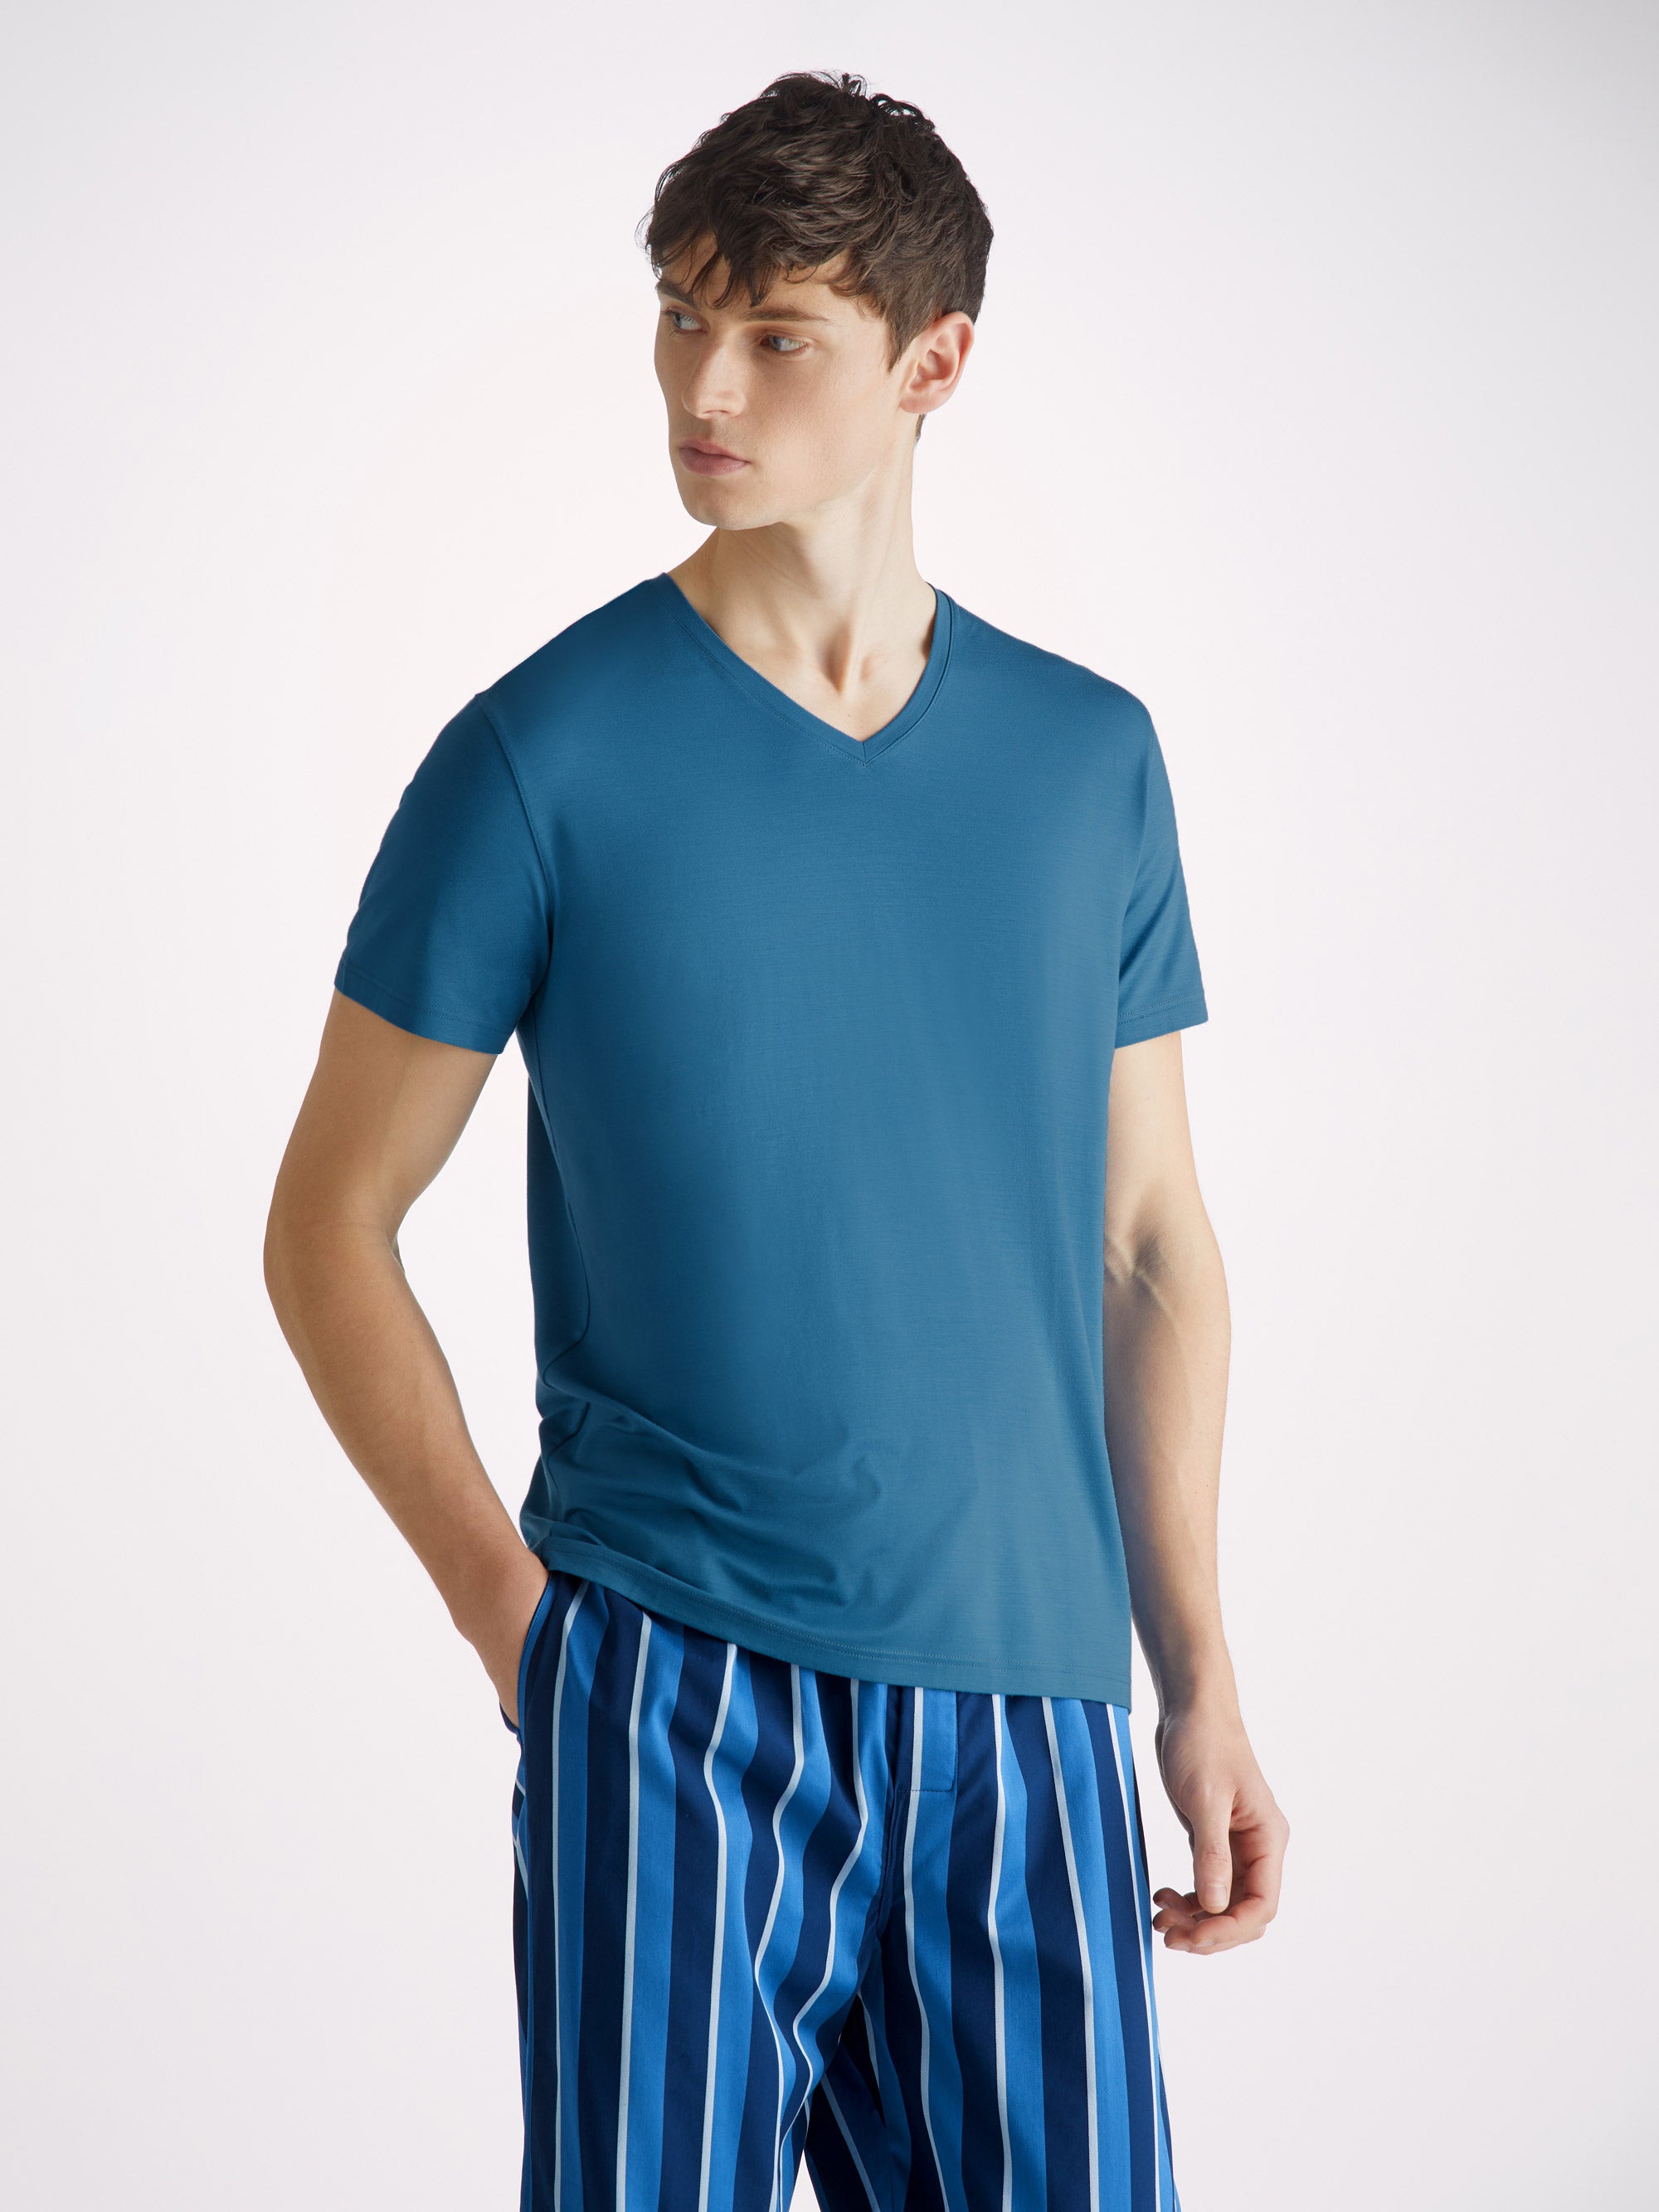 Men's V-Neck T-Shirt Basel Micro Modal Stretch Ocean